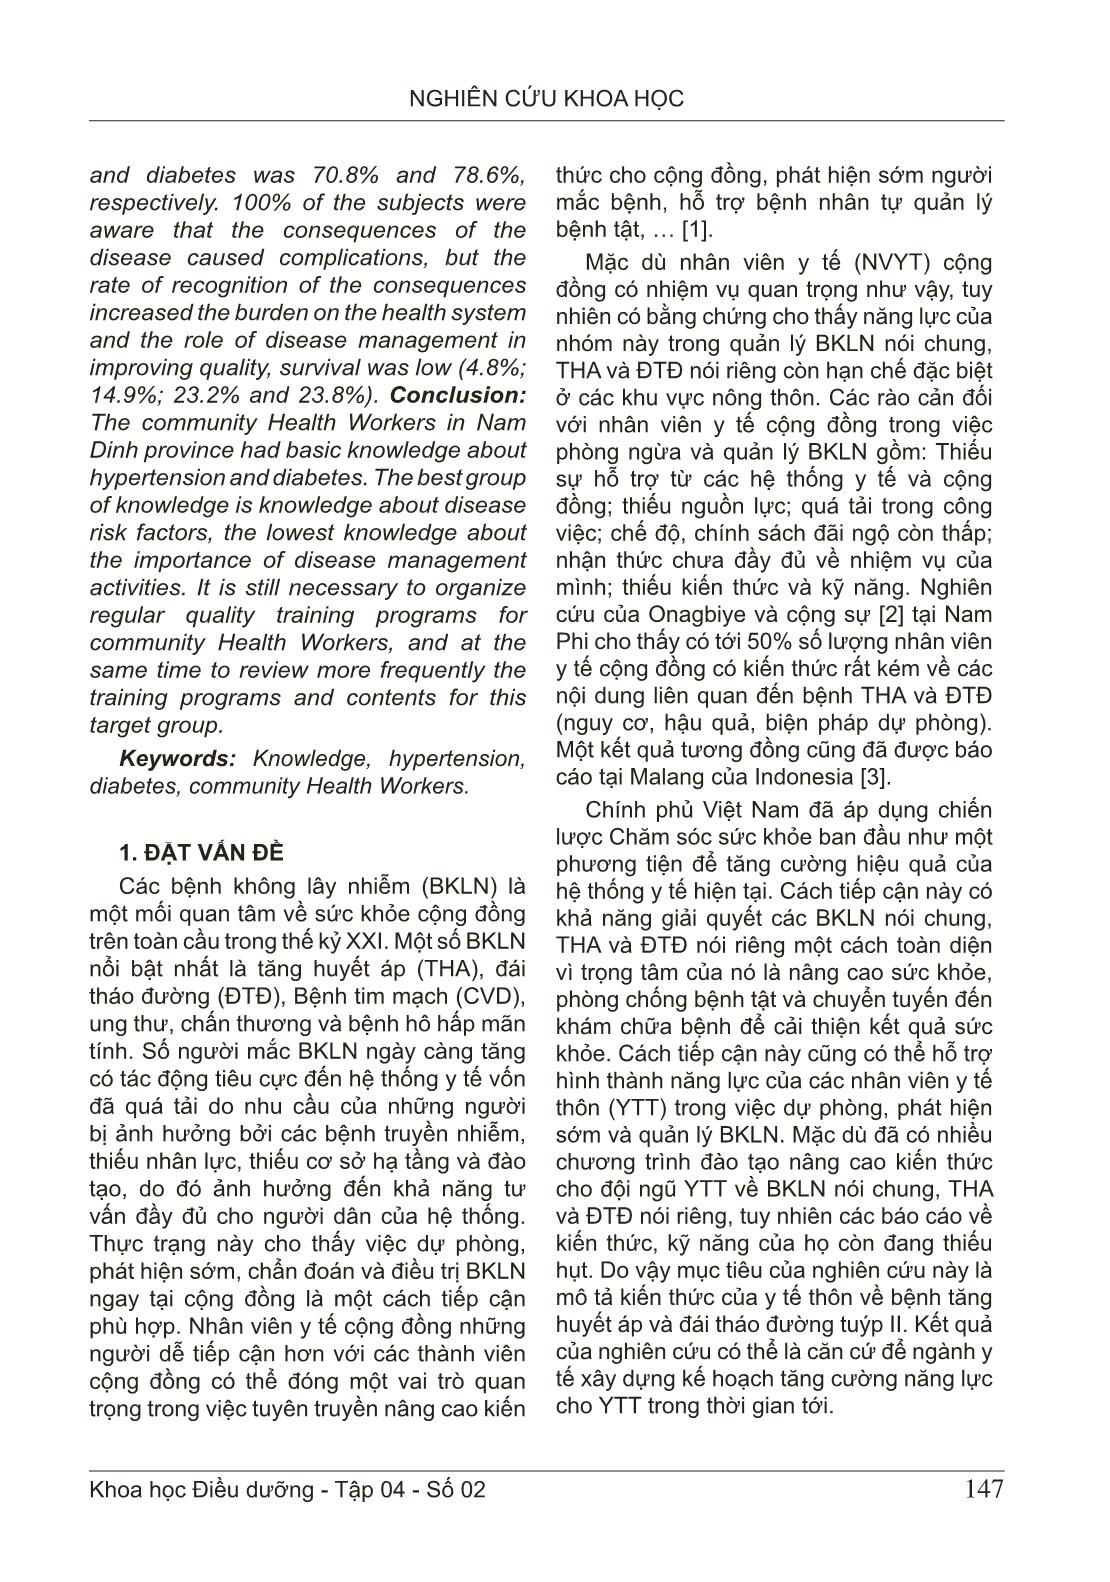 Kiến thức của y tế thôn về bệnh tăng huyết áp và đái tháo đường tuýp II: Một nghiên cứu cắt ngang tại tỉnh Nam Định trang 2